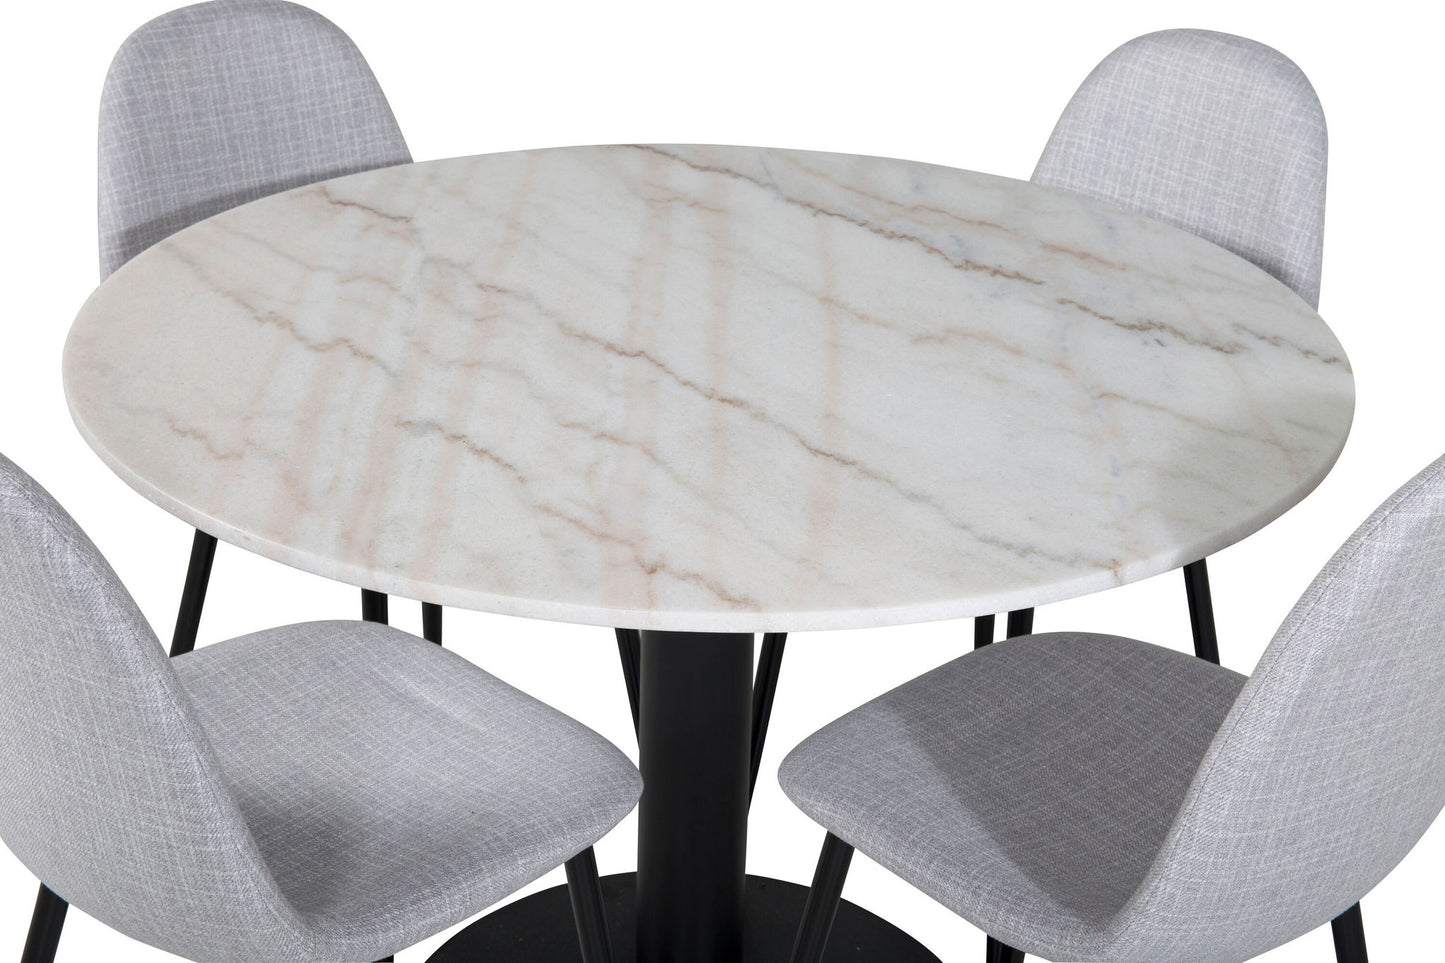 Estelle - Rundt spisebord, ø106 H75 - Hvid / Sort+ Polar Spisebordsstol - Sorte ben - Lysegråt stof